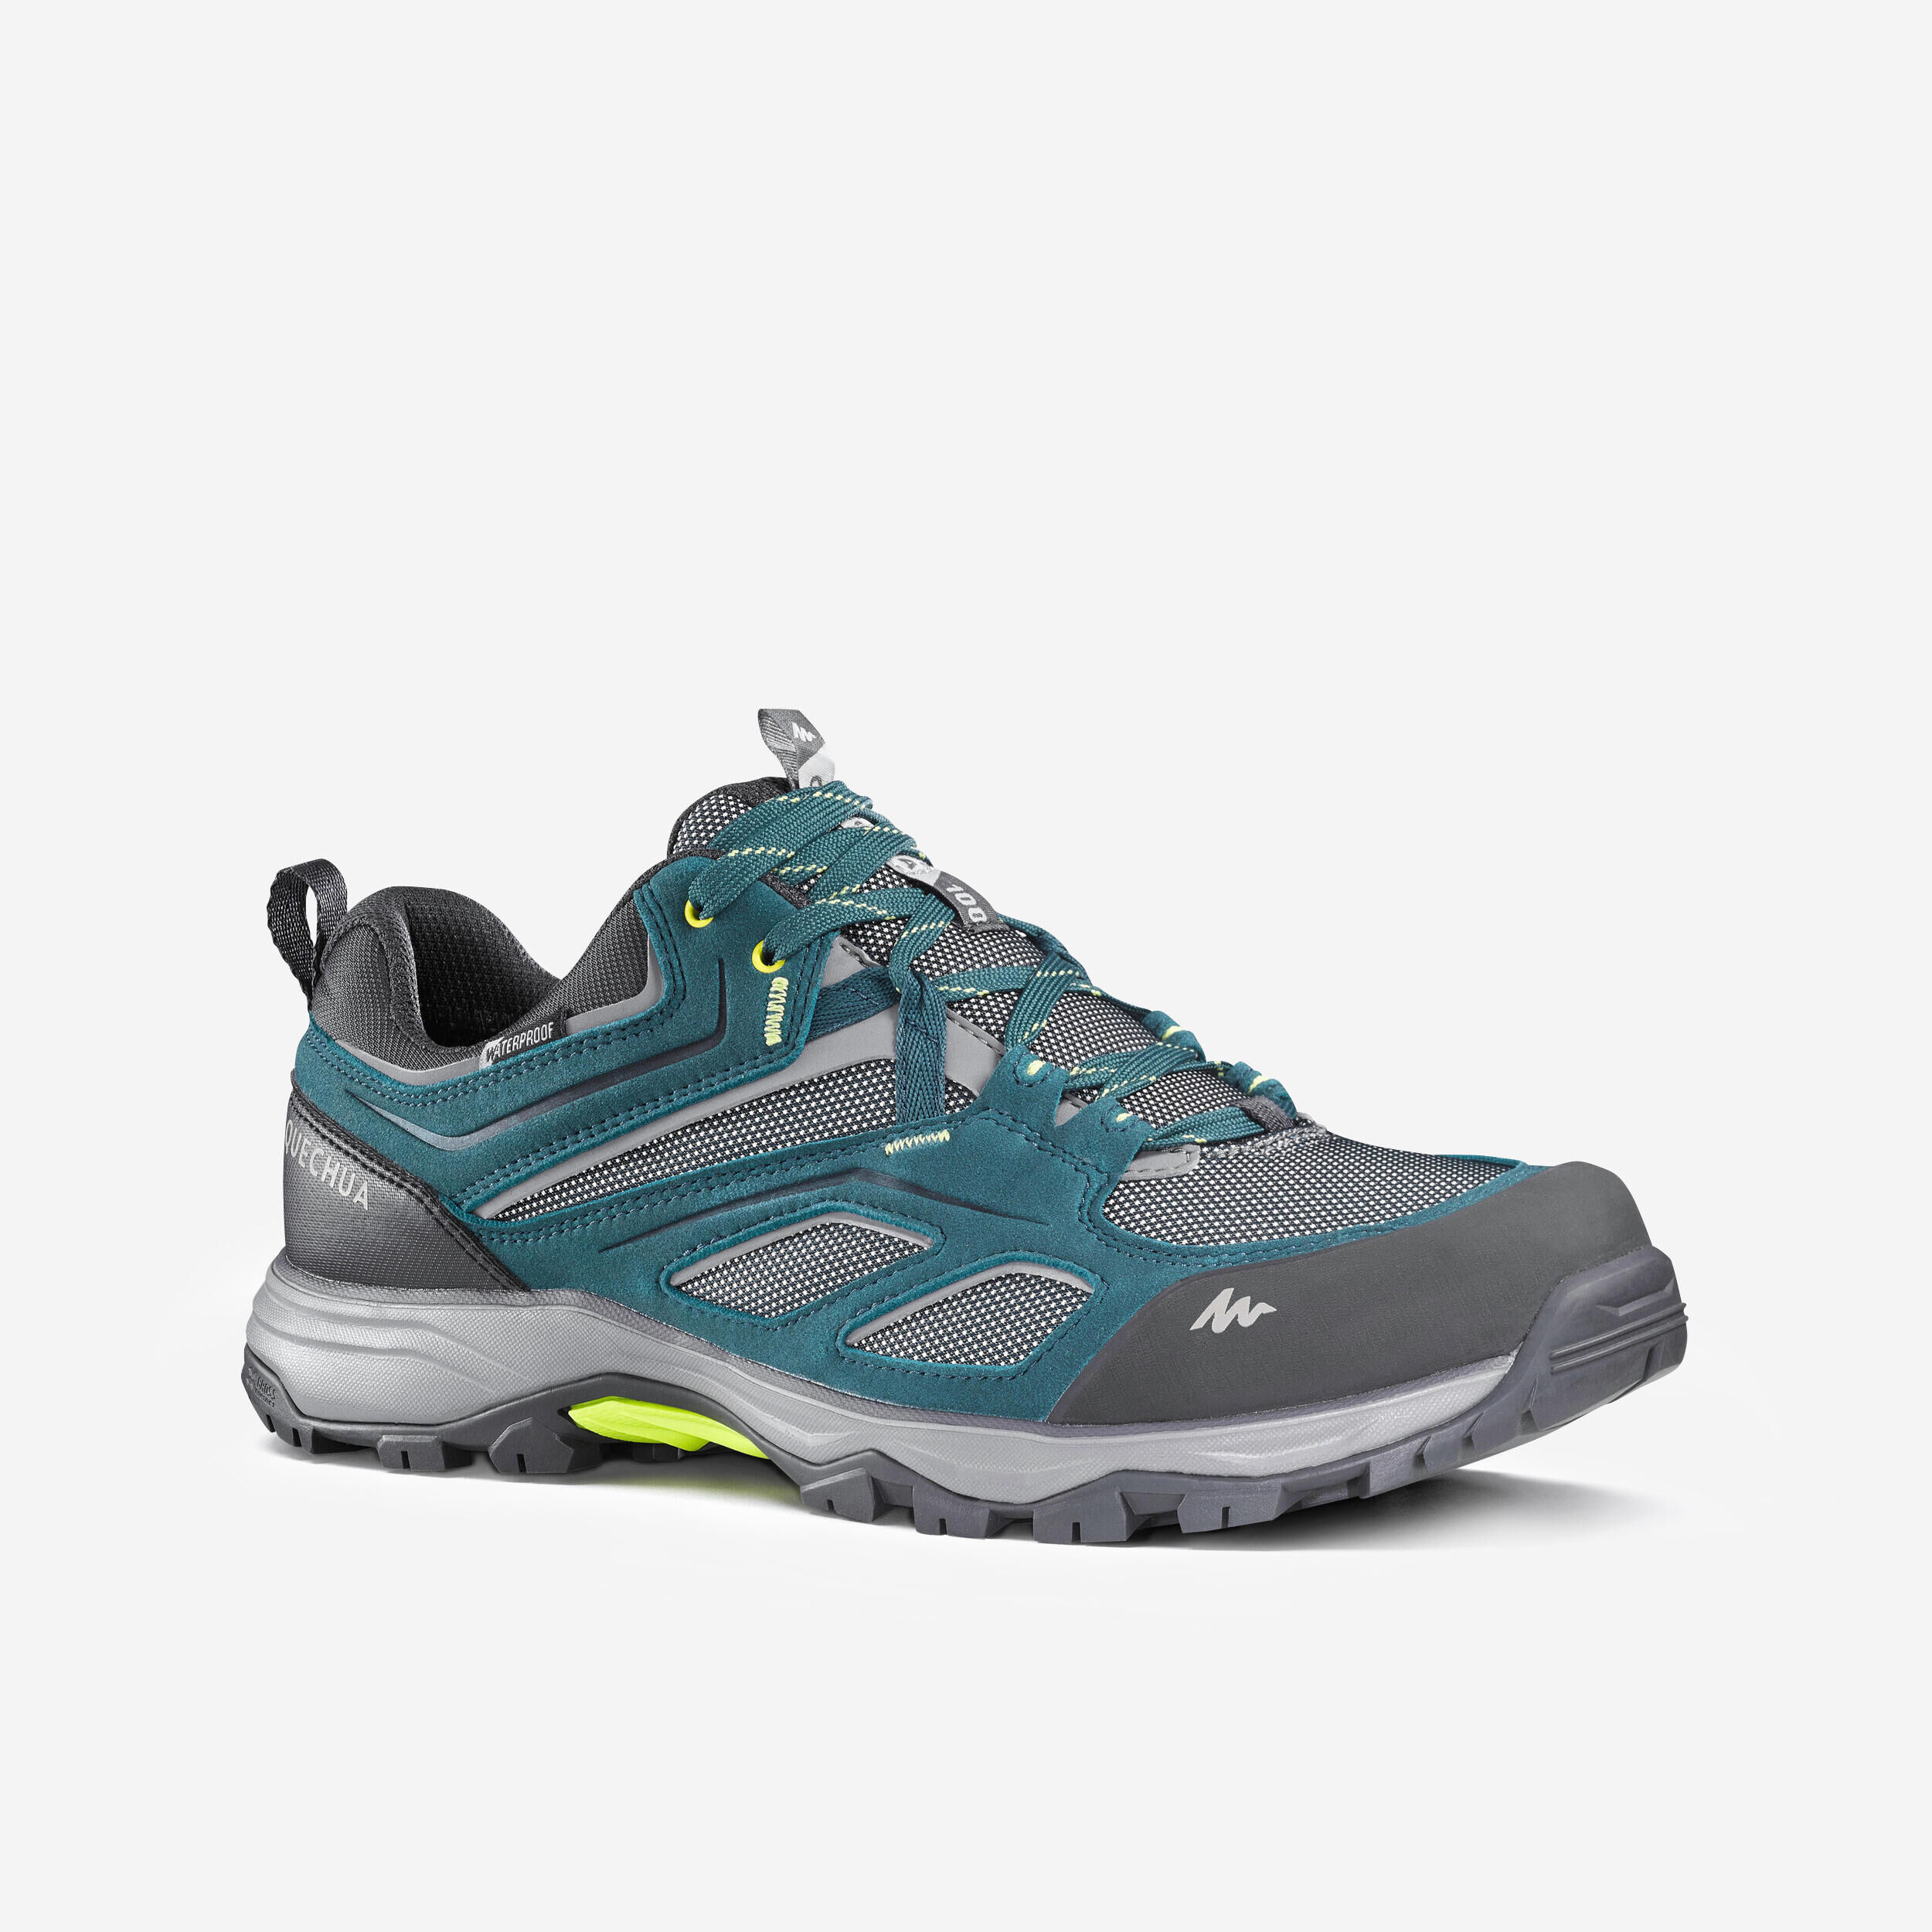 QUECHUA Men’s Waterproof Mountain Walking Shoes - MH100 - Blue